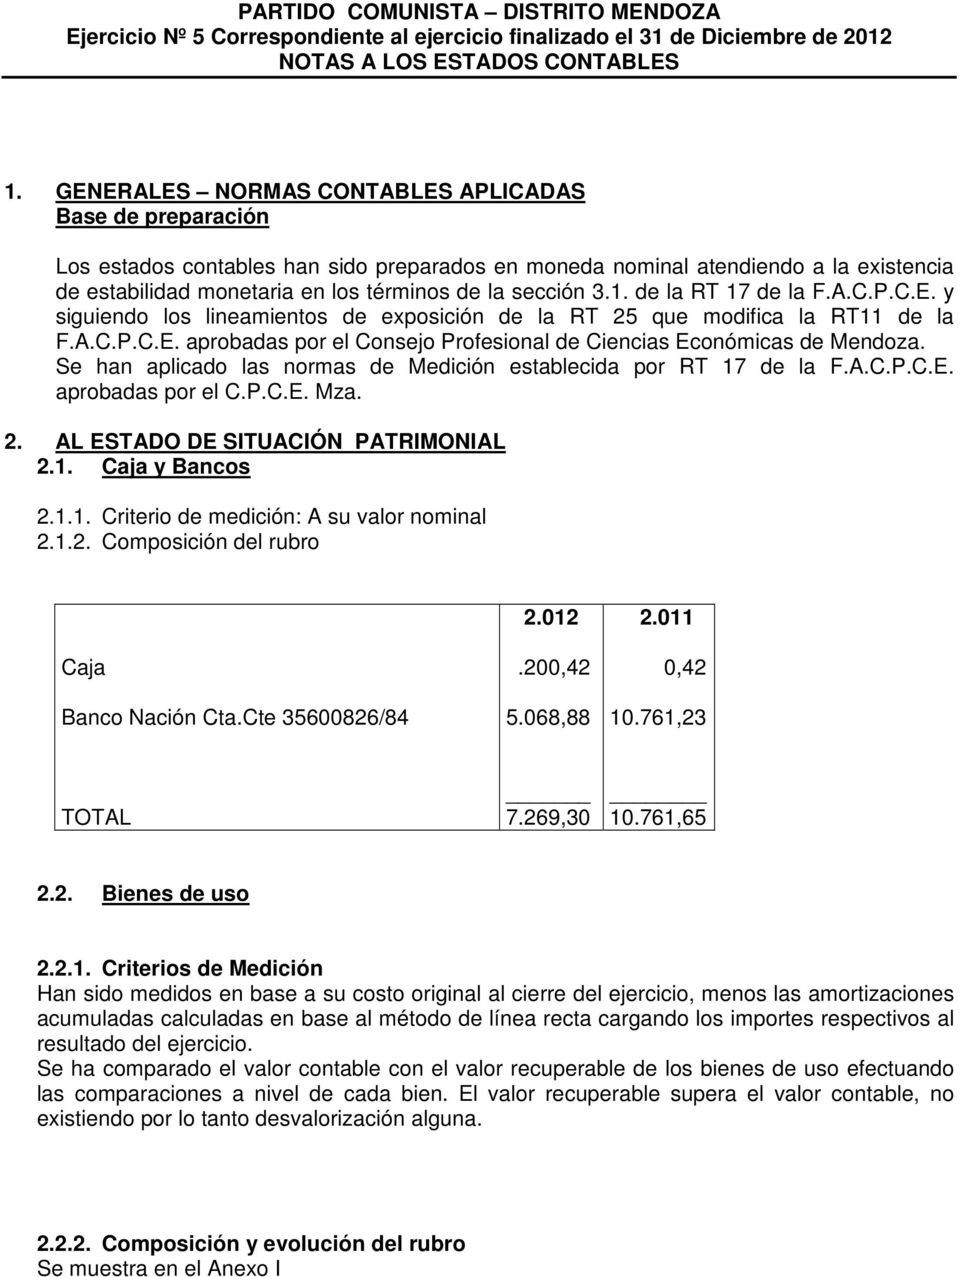 3.1. de la RT 17 de la F.A.C.P.C.E. y siguiendo los lineamientos de exposición de la RT 25 que modifica la RT11 de la F.A.C.P.C.E. aprobadas por el Consejo Profesional de Ciencias Económicas de Mendoza.